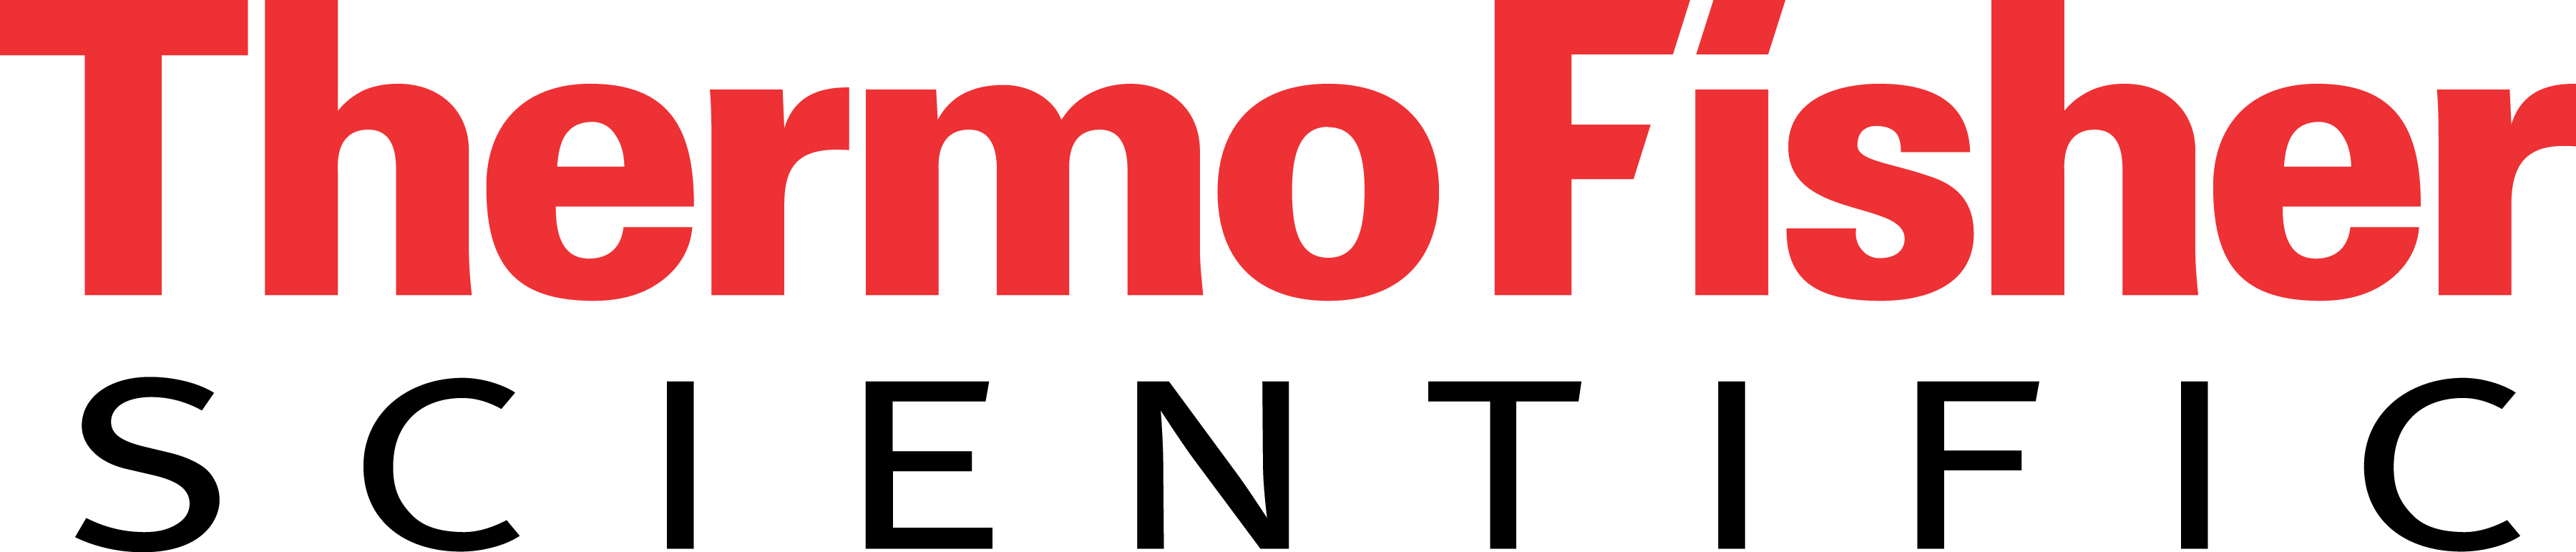 Sponsor Logo - ThermoFisher Scientific